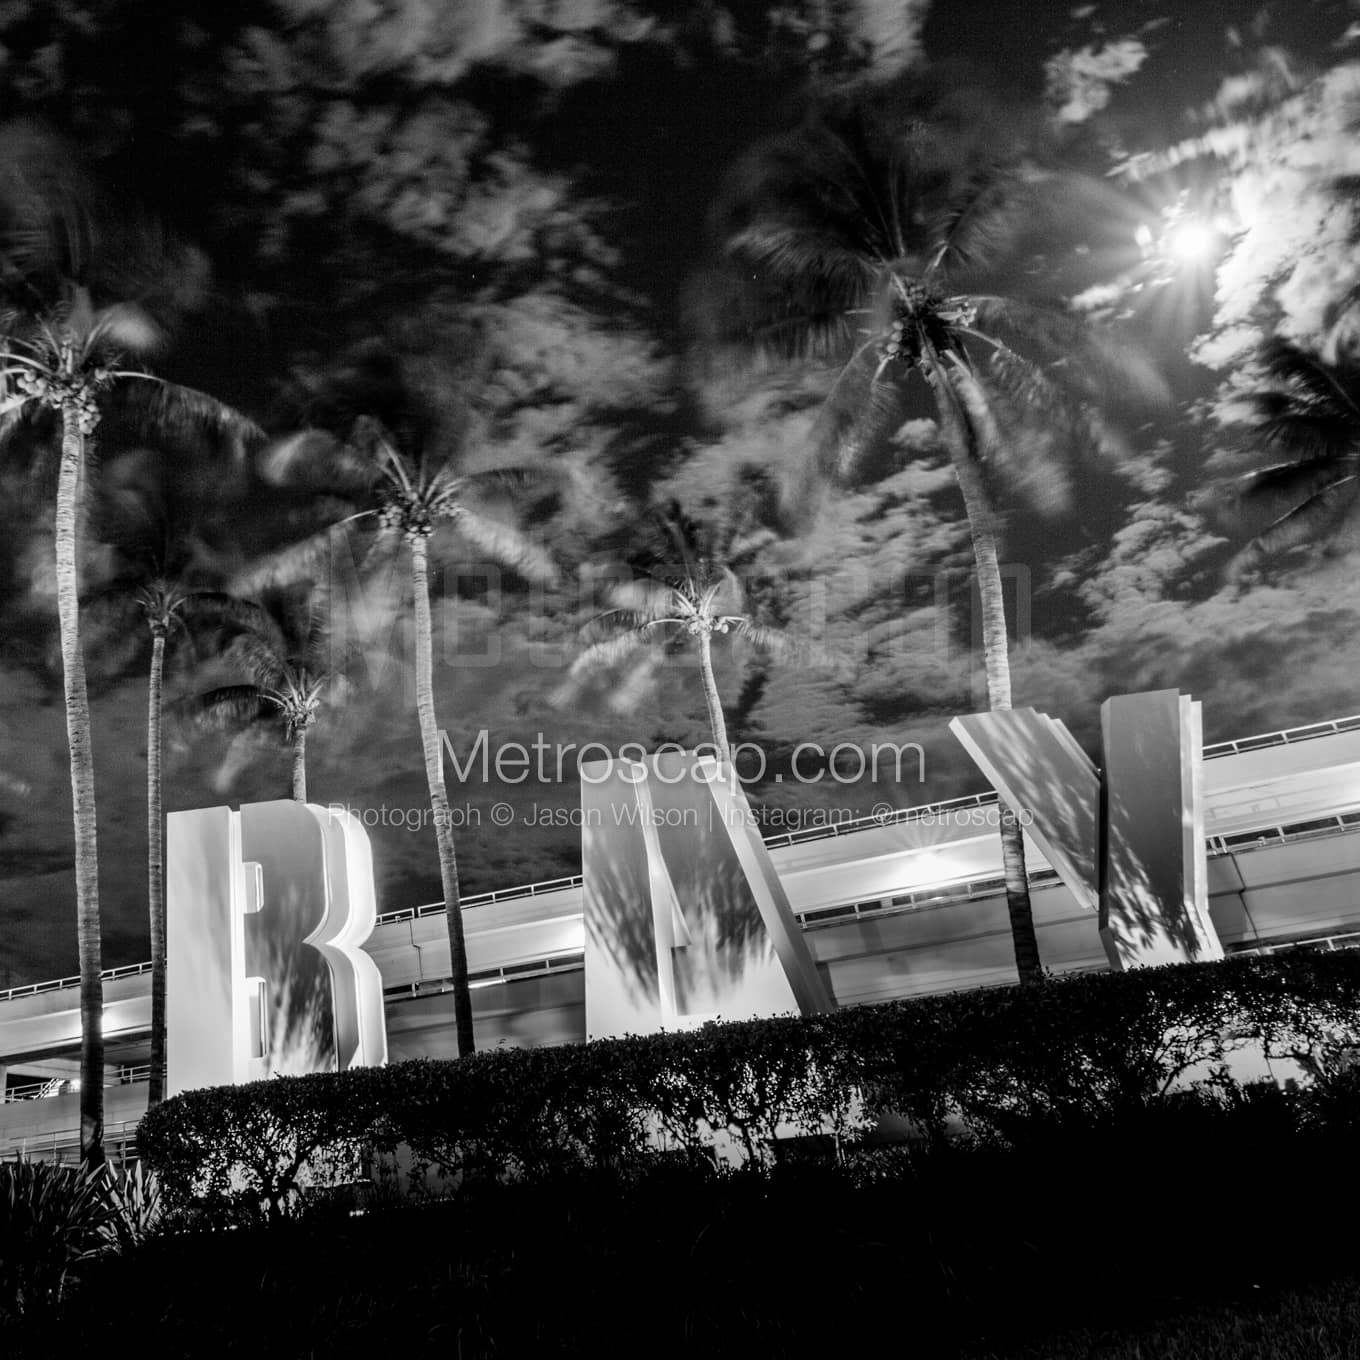 Miami Black & White Landscape Photography